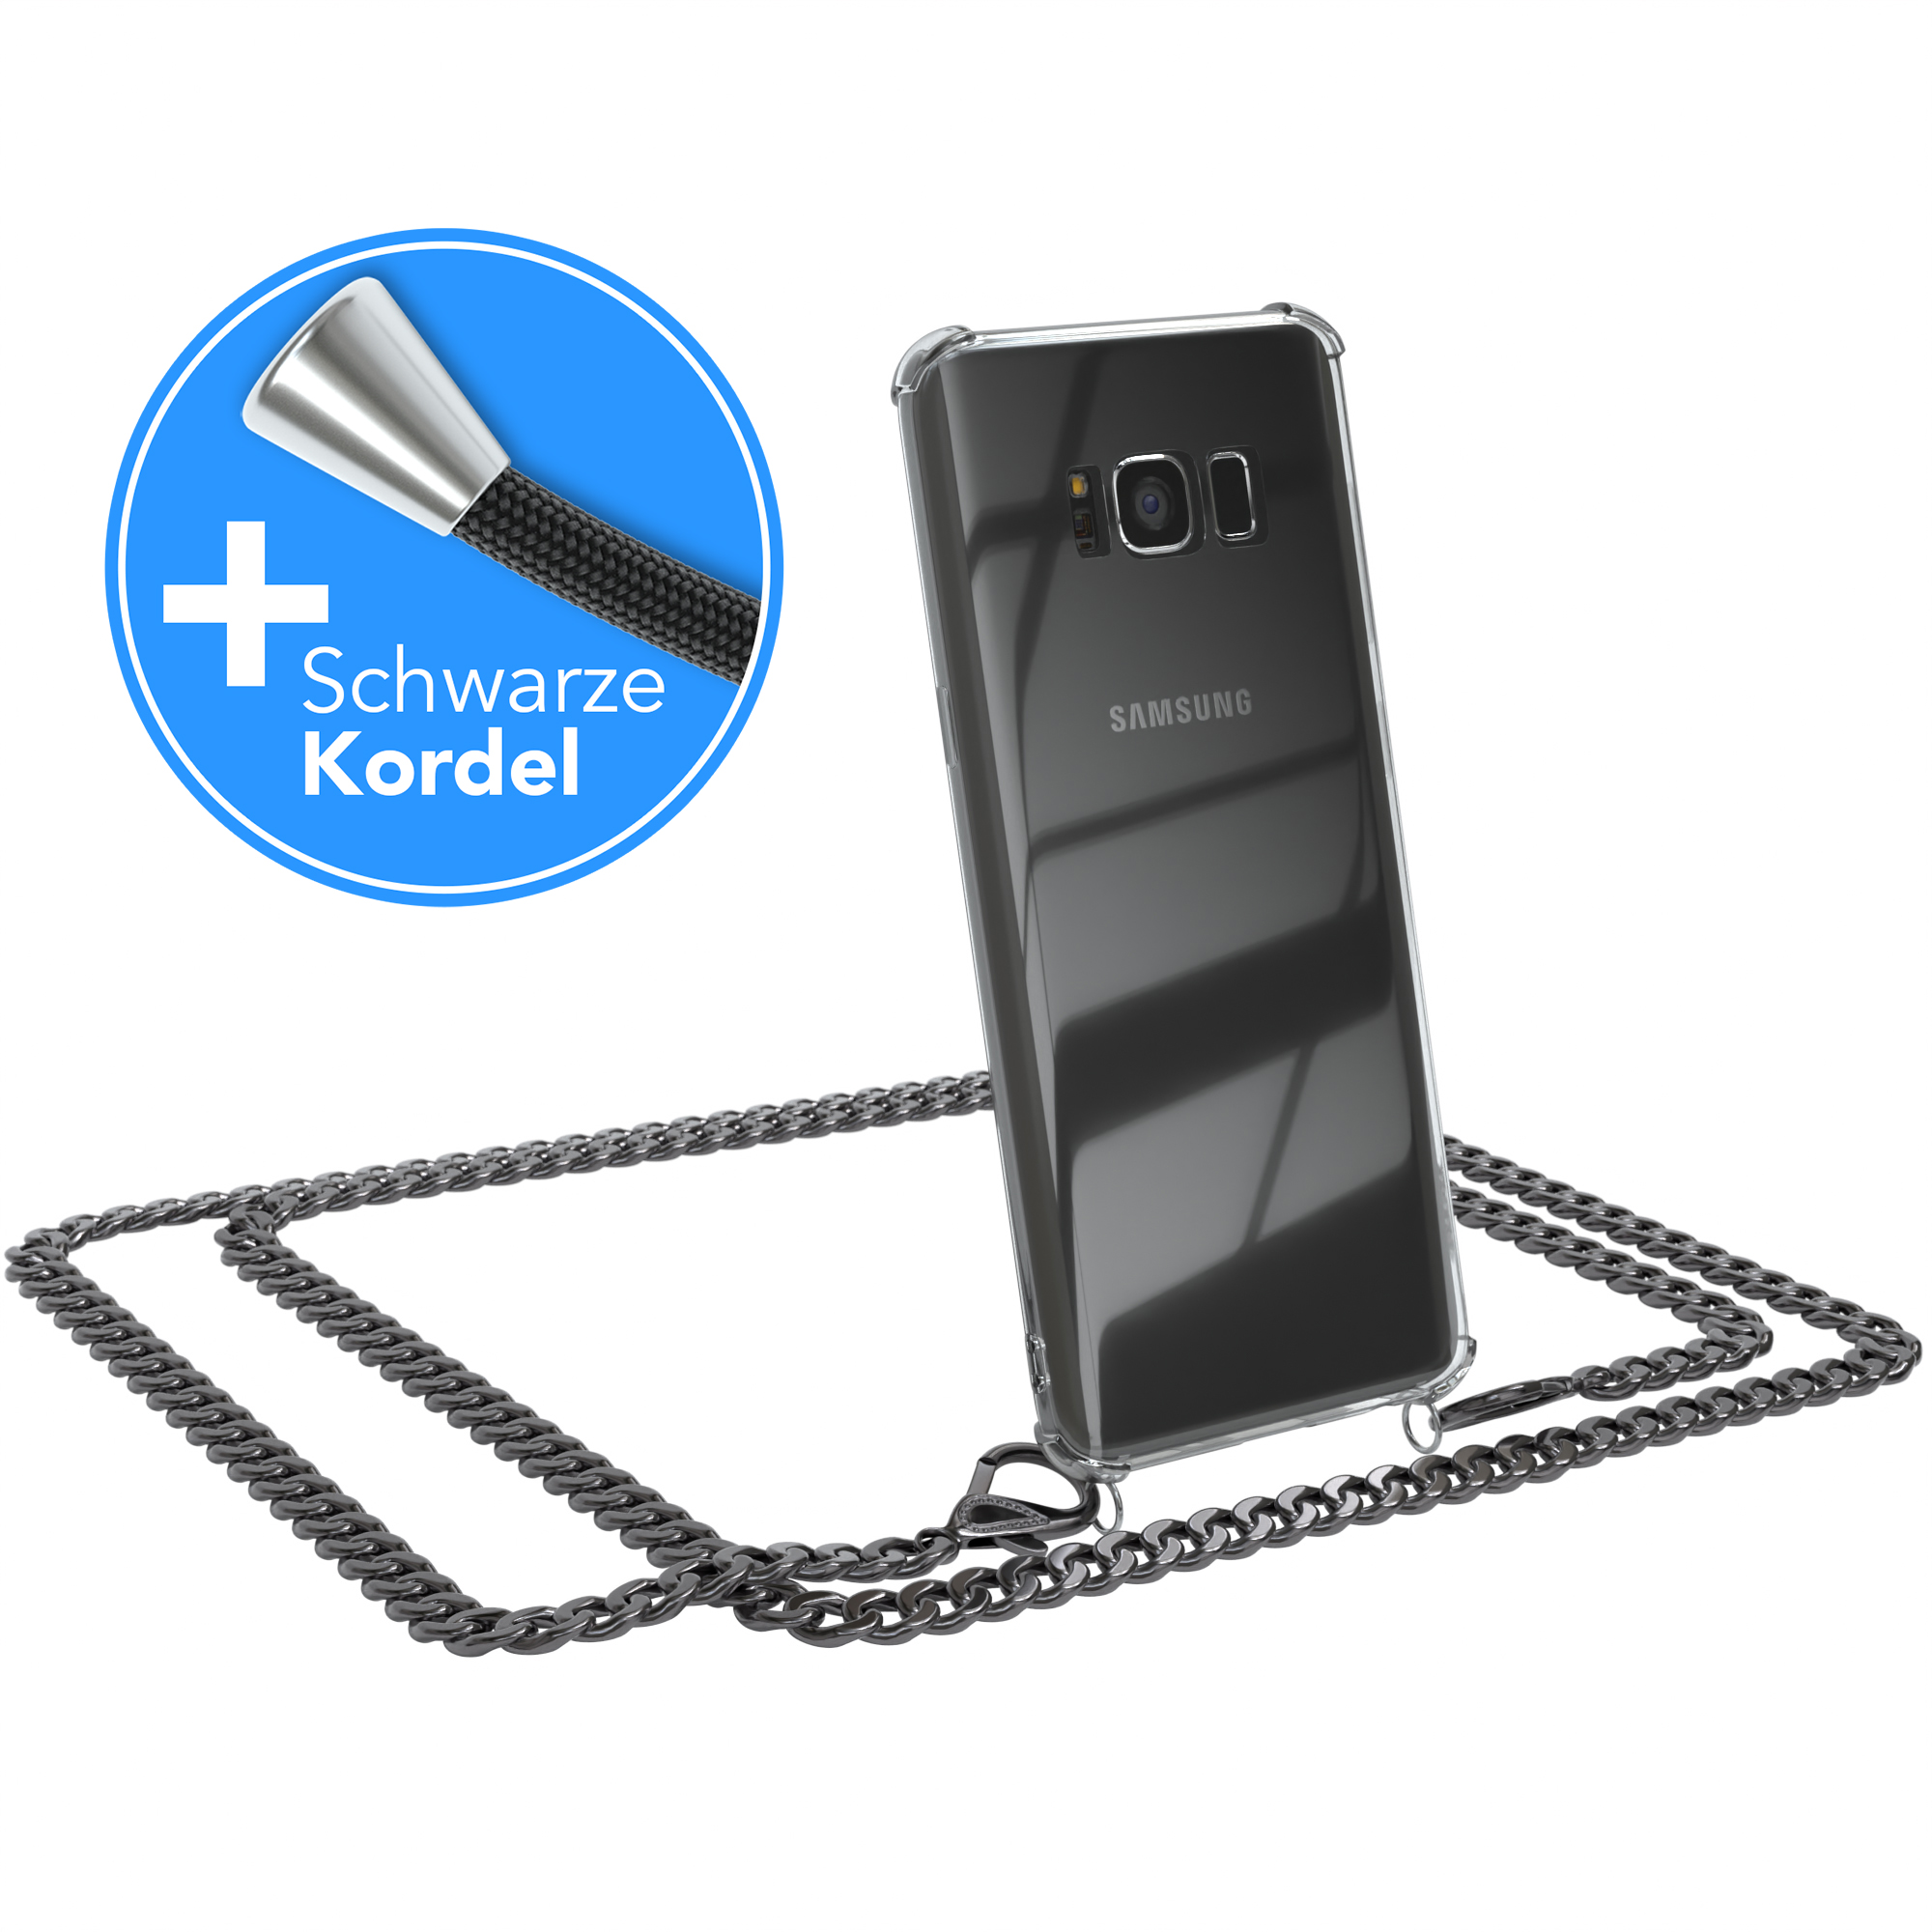 EAZY CASE Handykette Metall + Umhängetasche, Galaxy S8, Schwarz, Anthrazit Kordel Grau extra Samsung